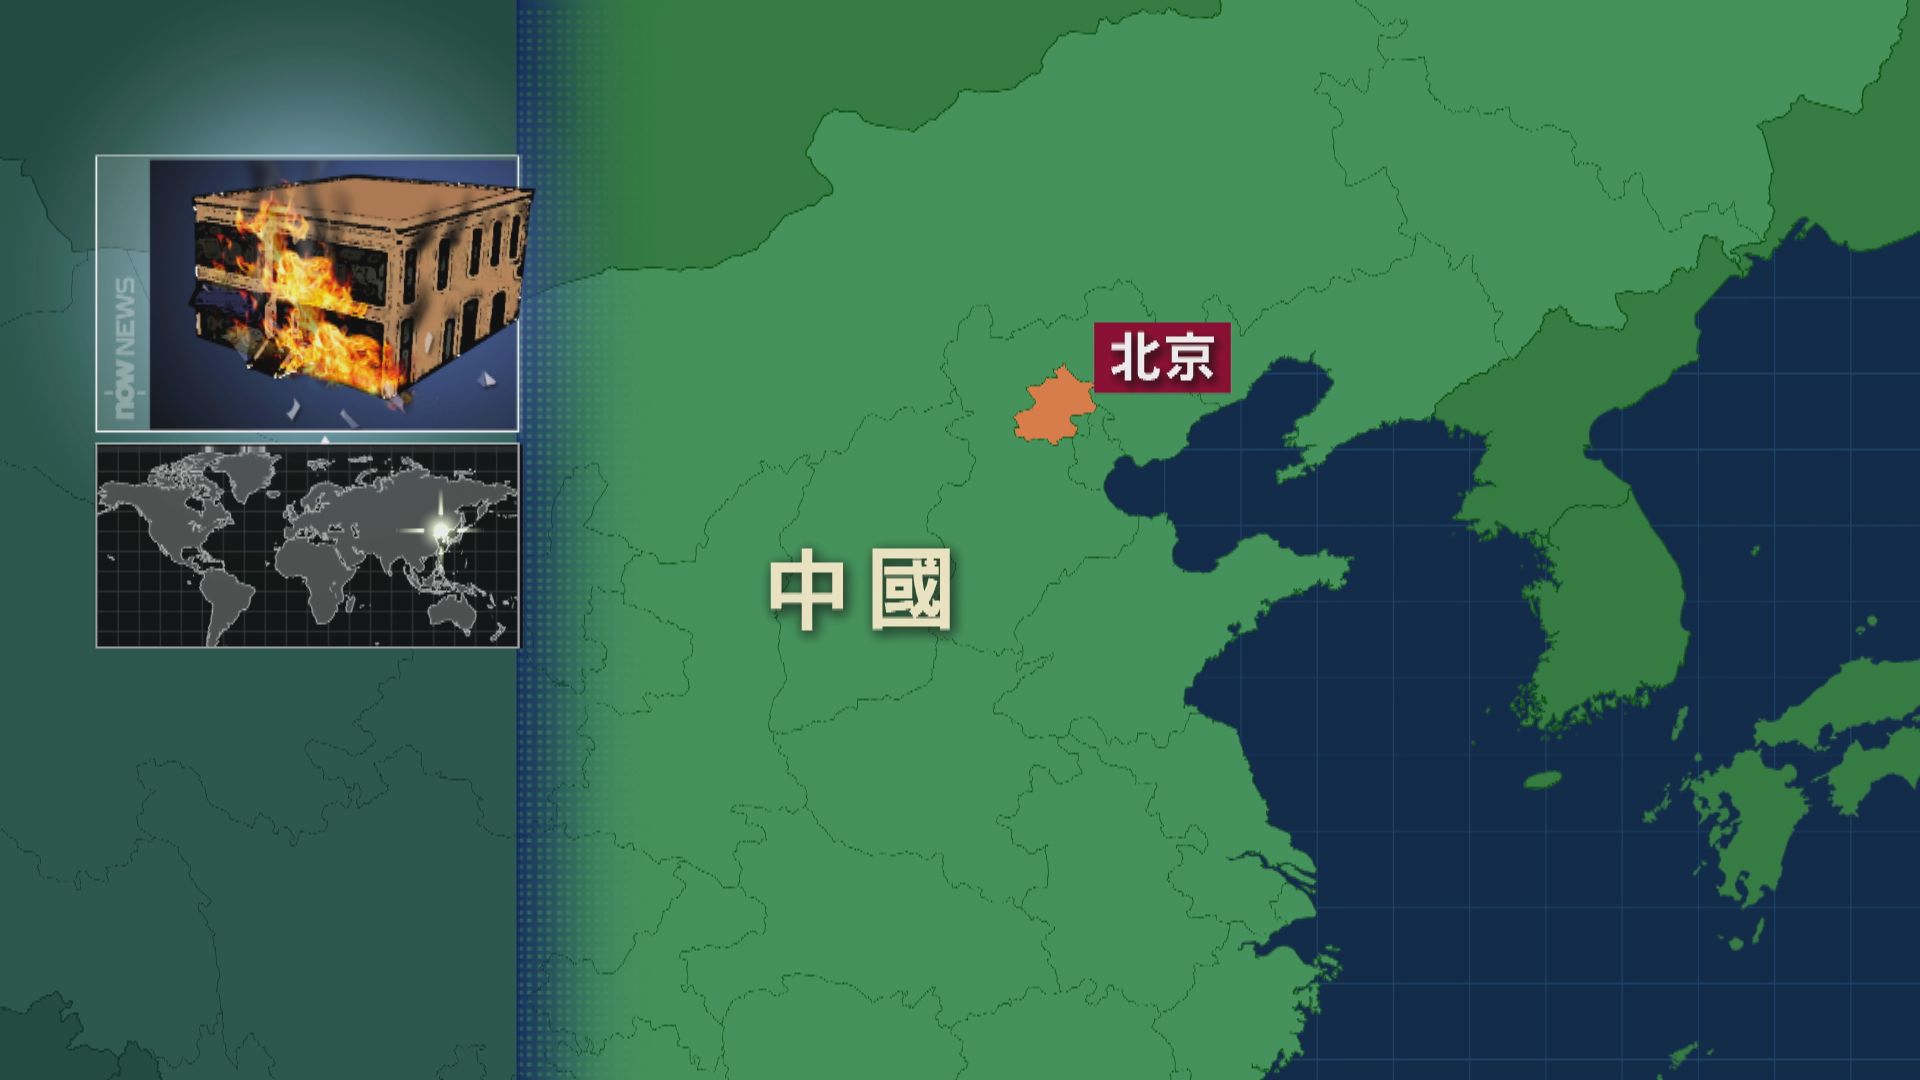 北京朝陽區自建房失火4人死亡